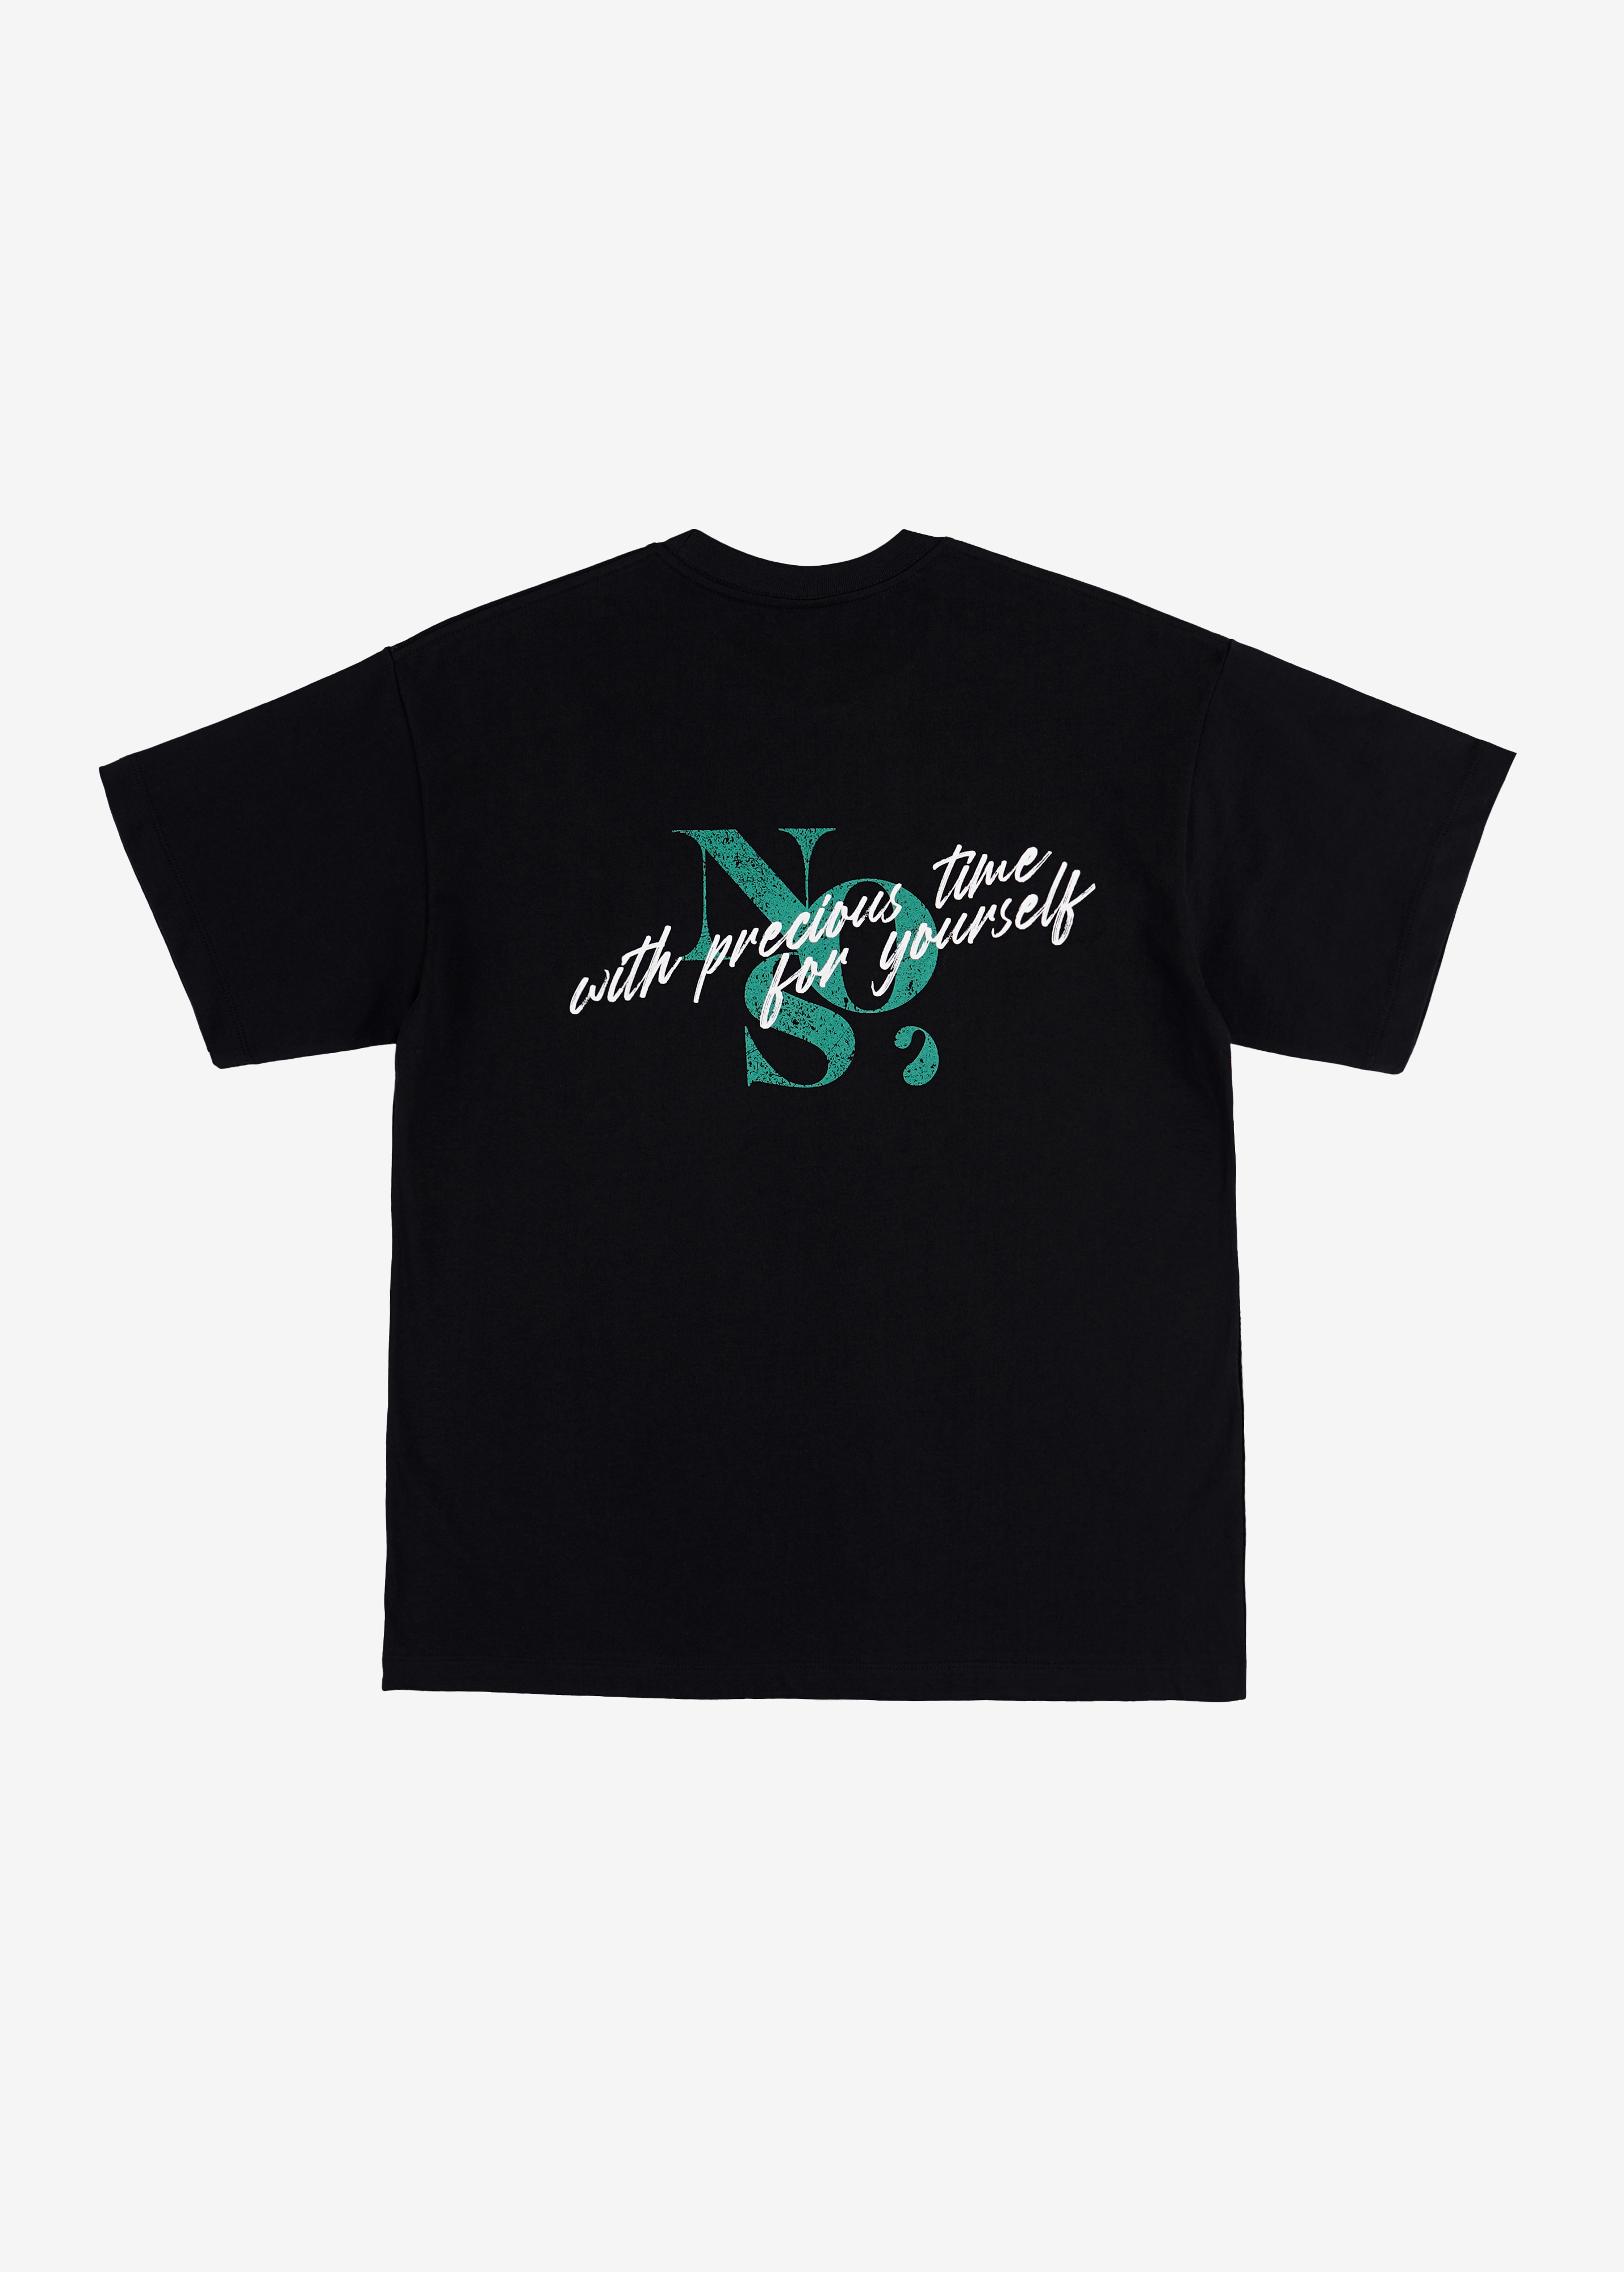 NOS7 스크레치 로고 티셔츠 - 블랙